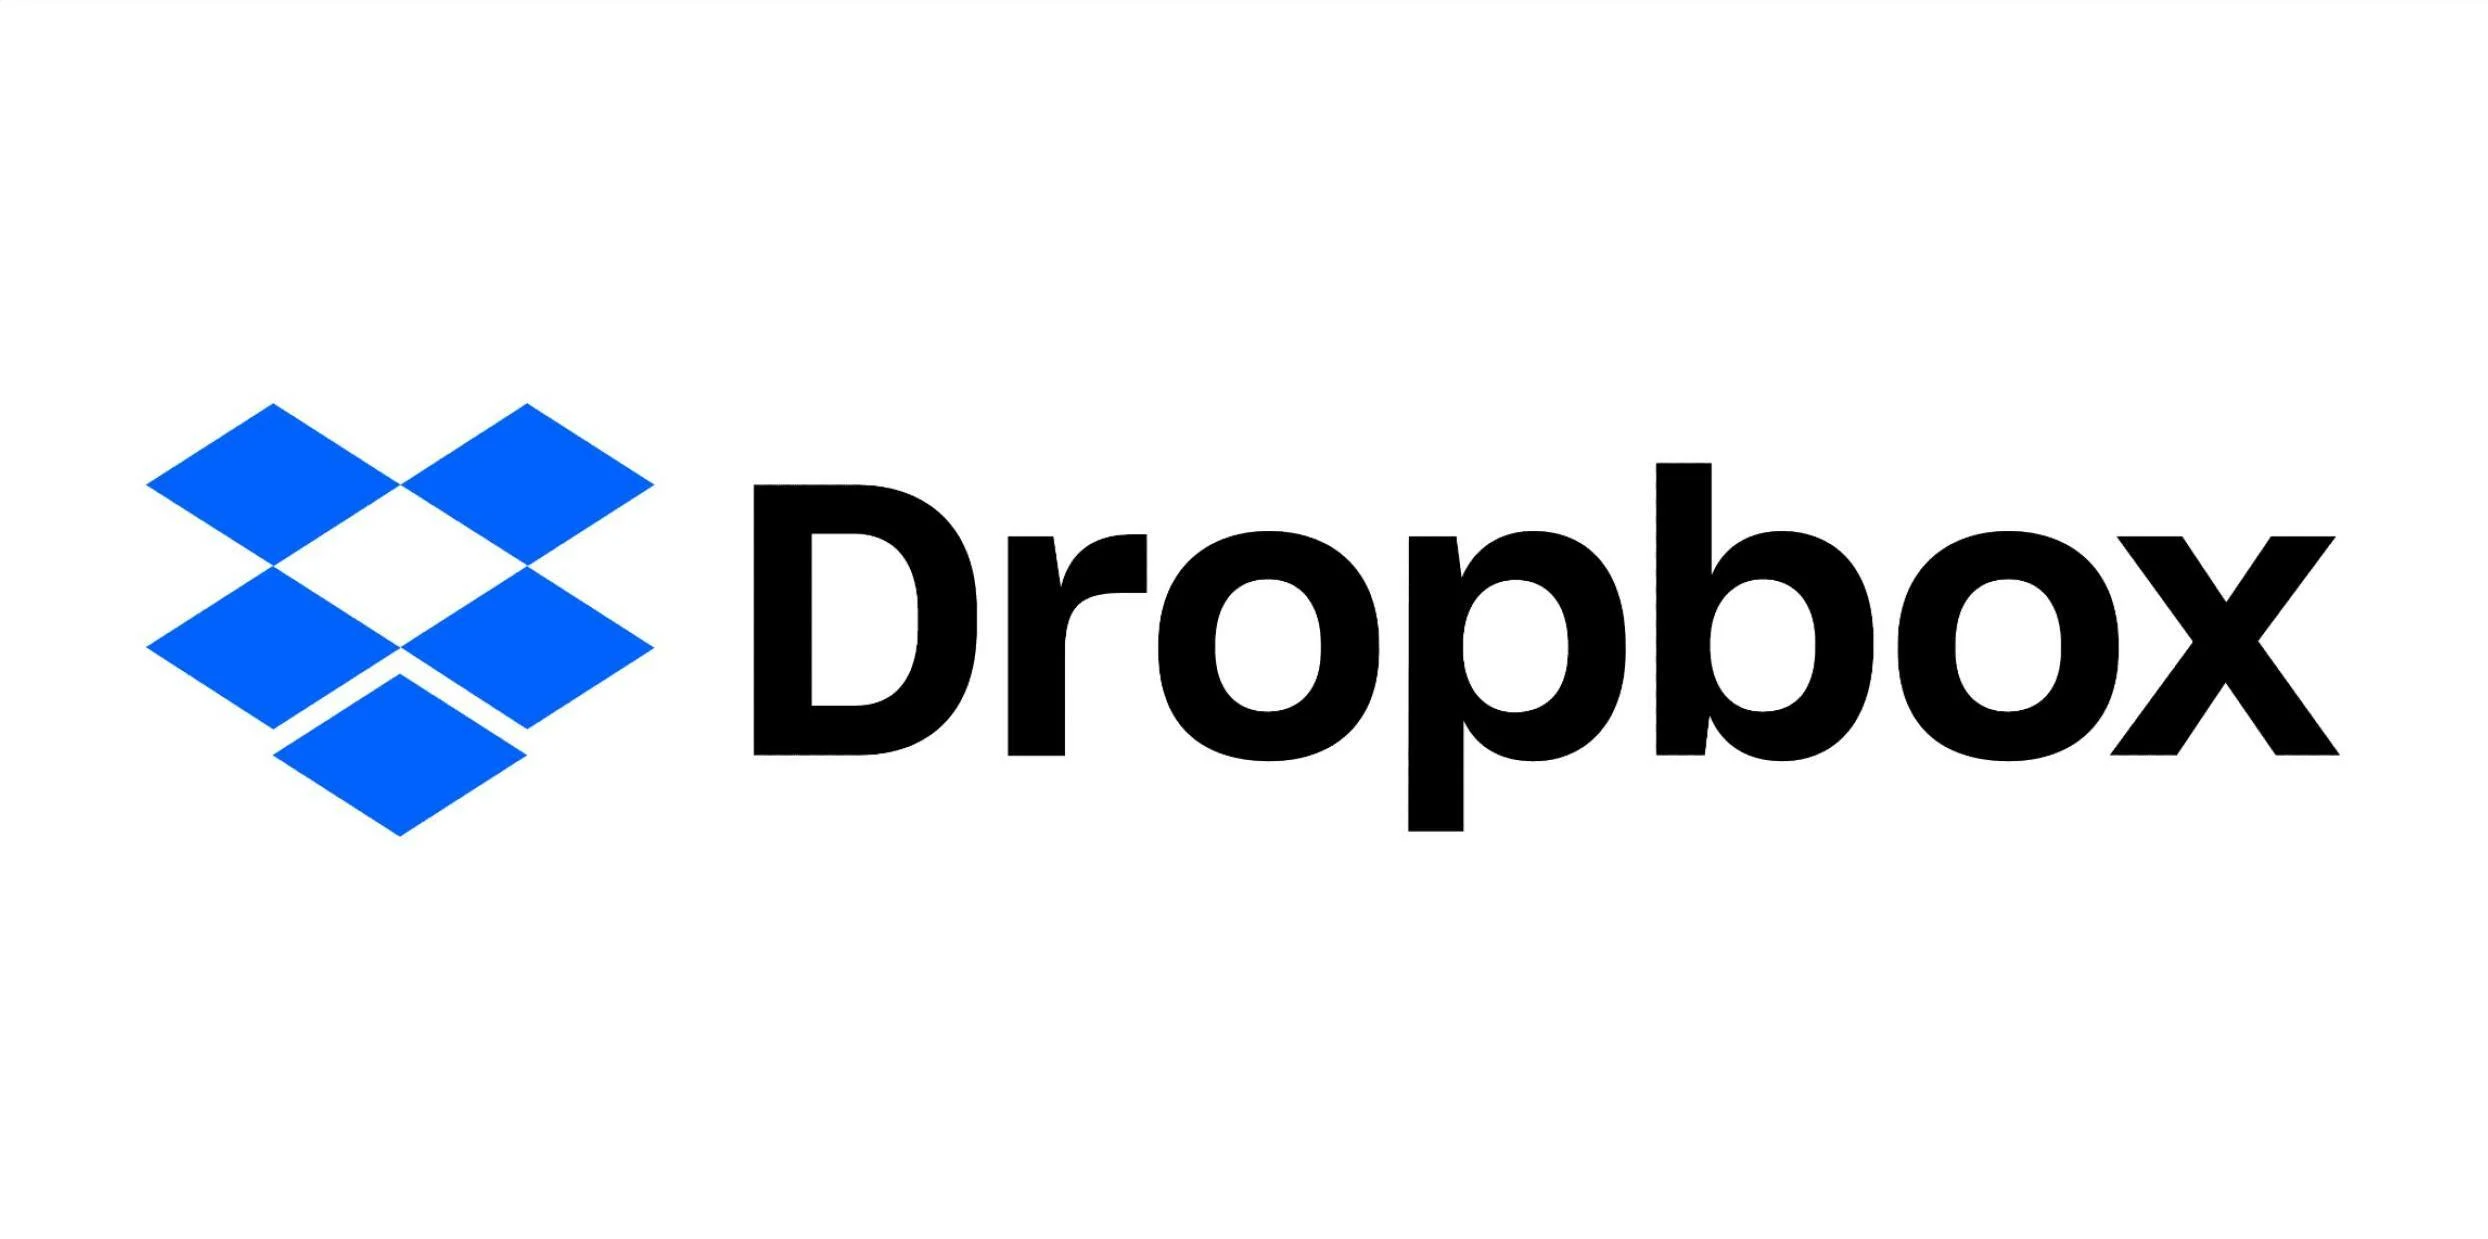 Dropbox убрал безлимитный объем хранилища из своего тарифа из-за криптомайнеров